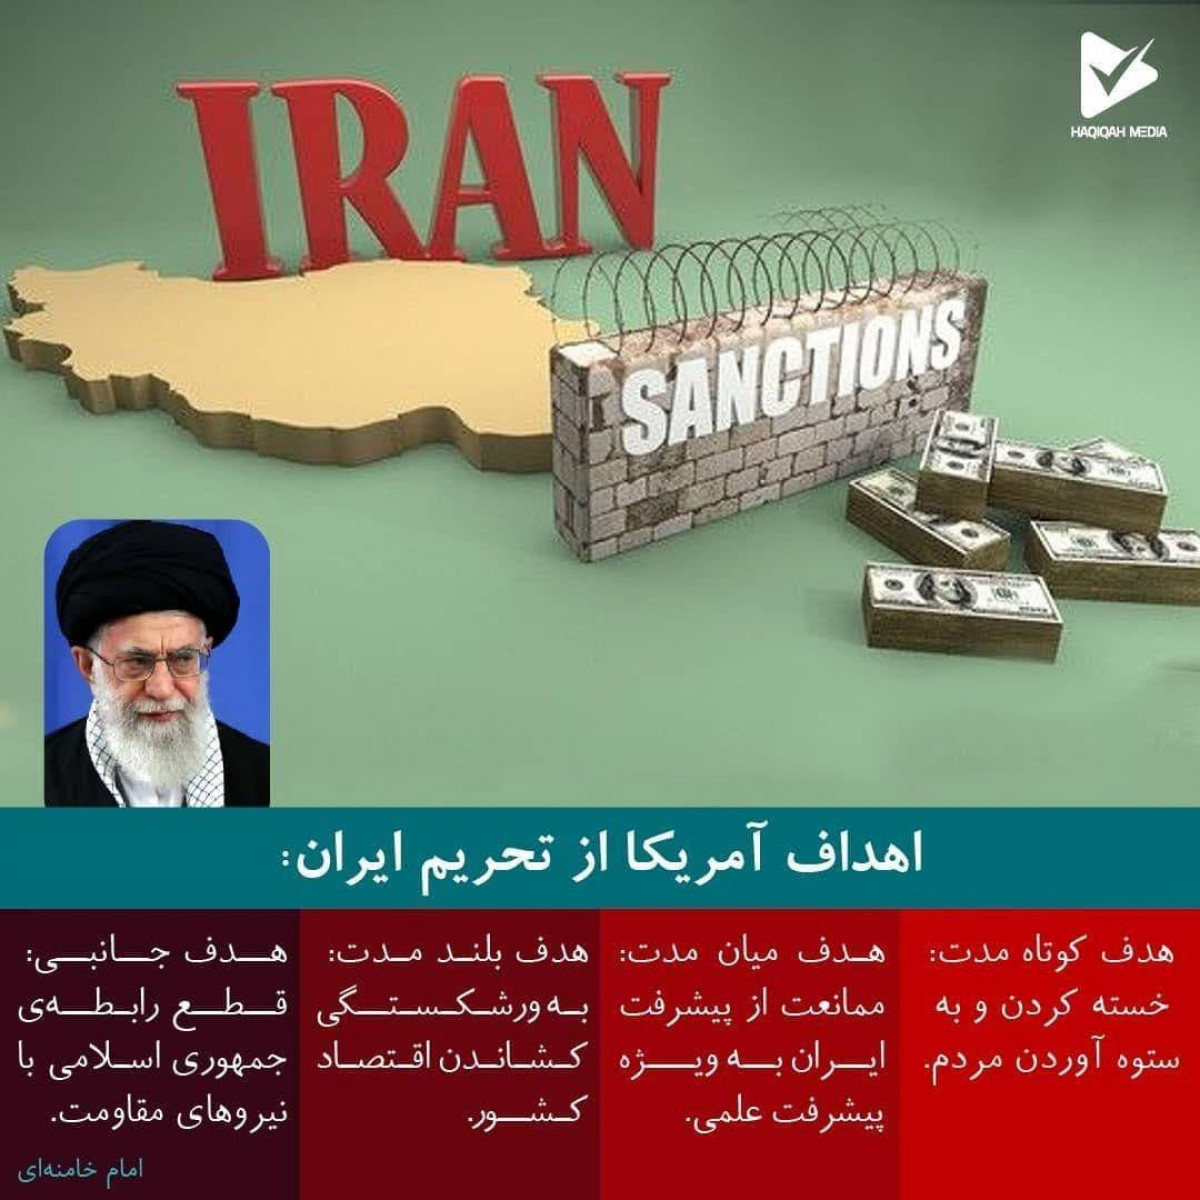 اهداف آمریکا از تحریم ایران